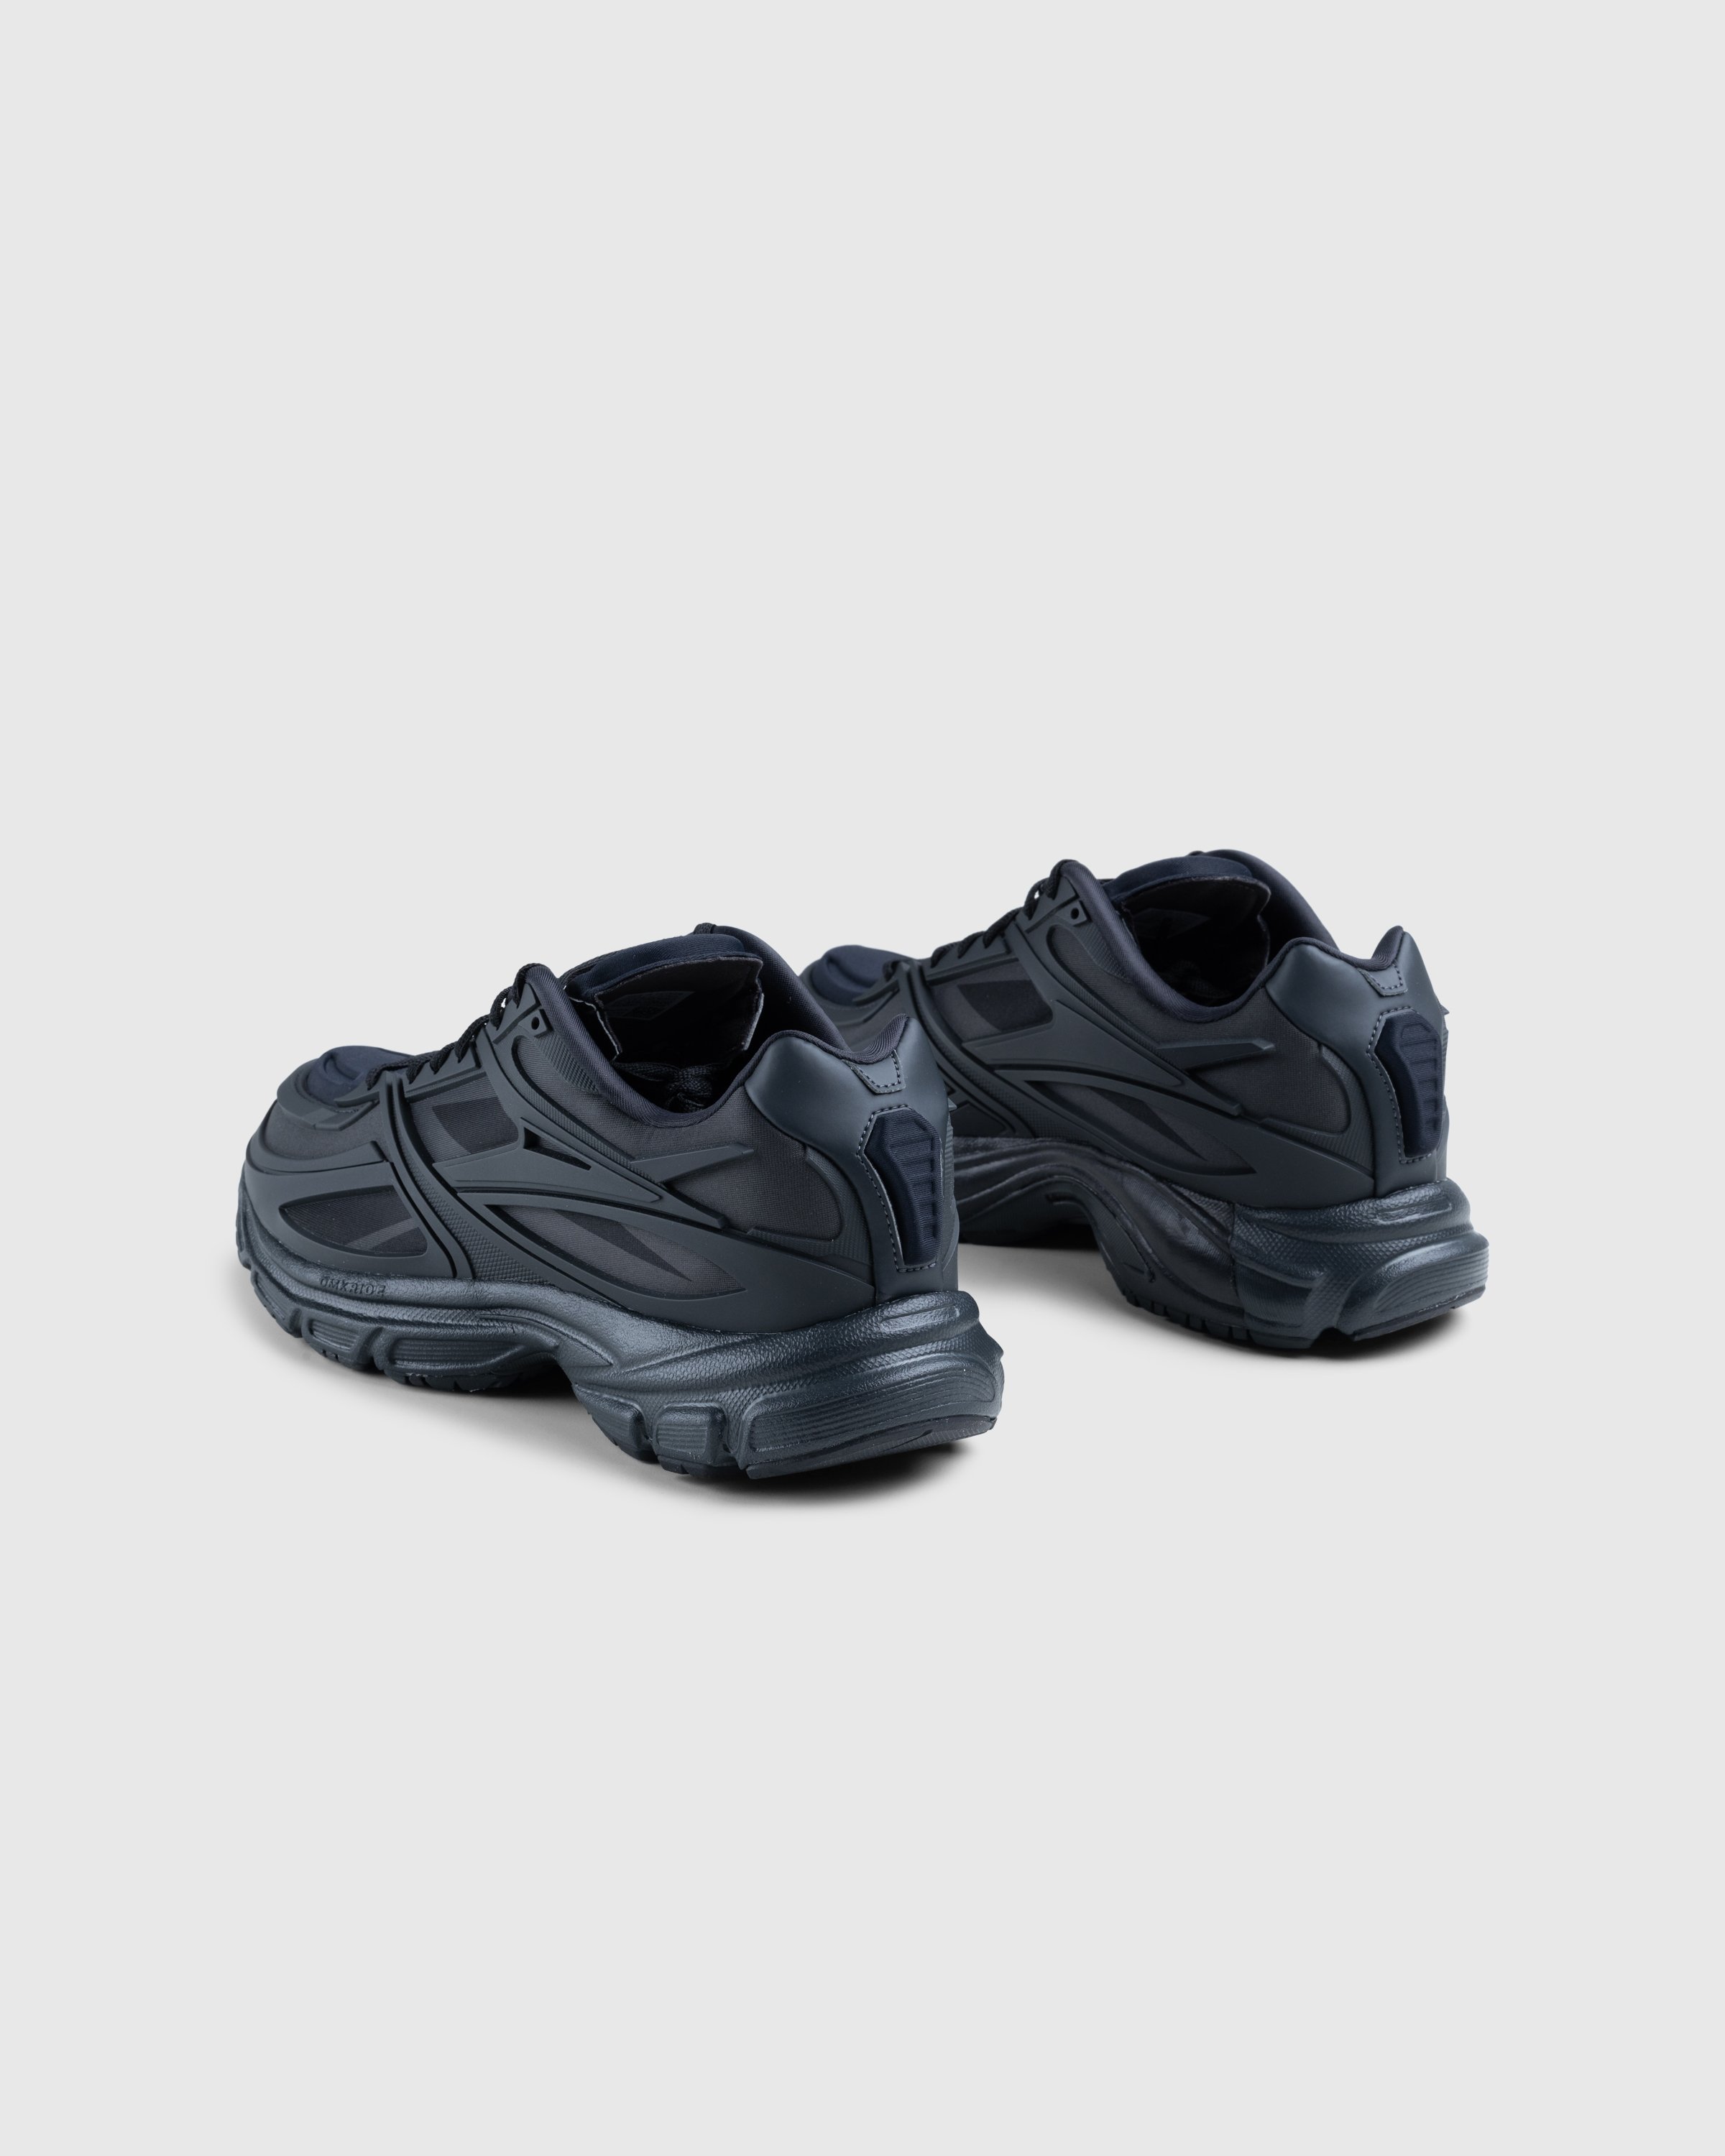 Reebok - Premier Road Black - Footwear - Black - Image 4